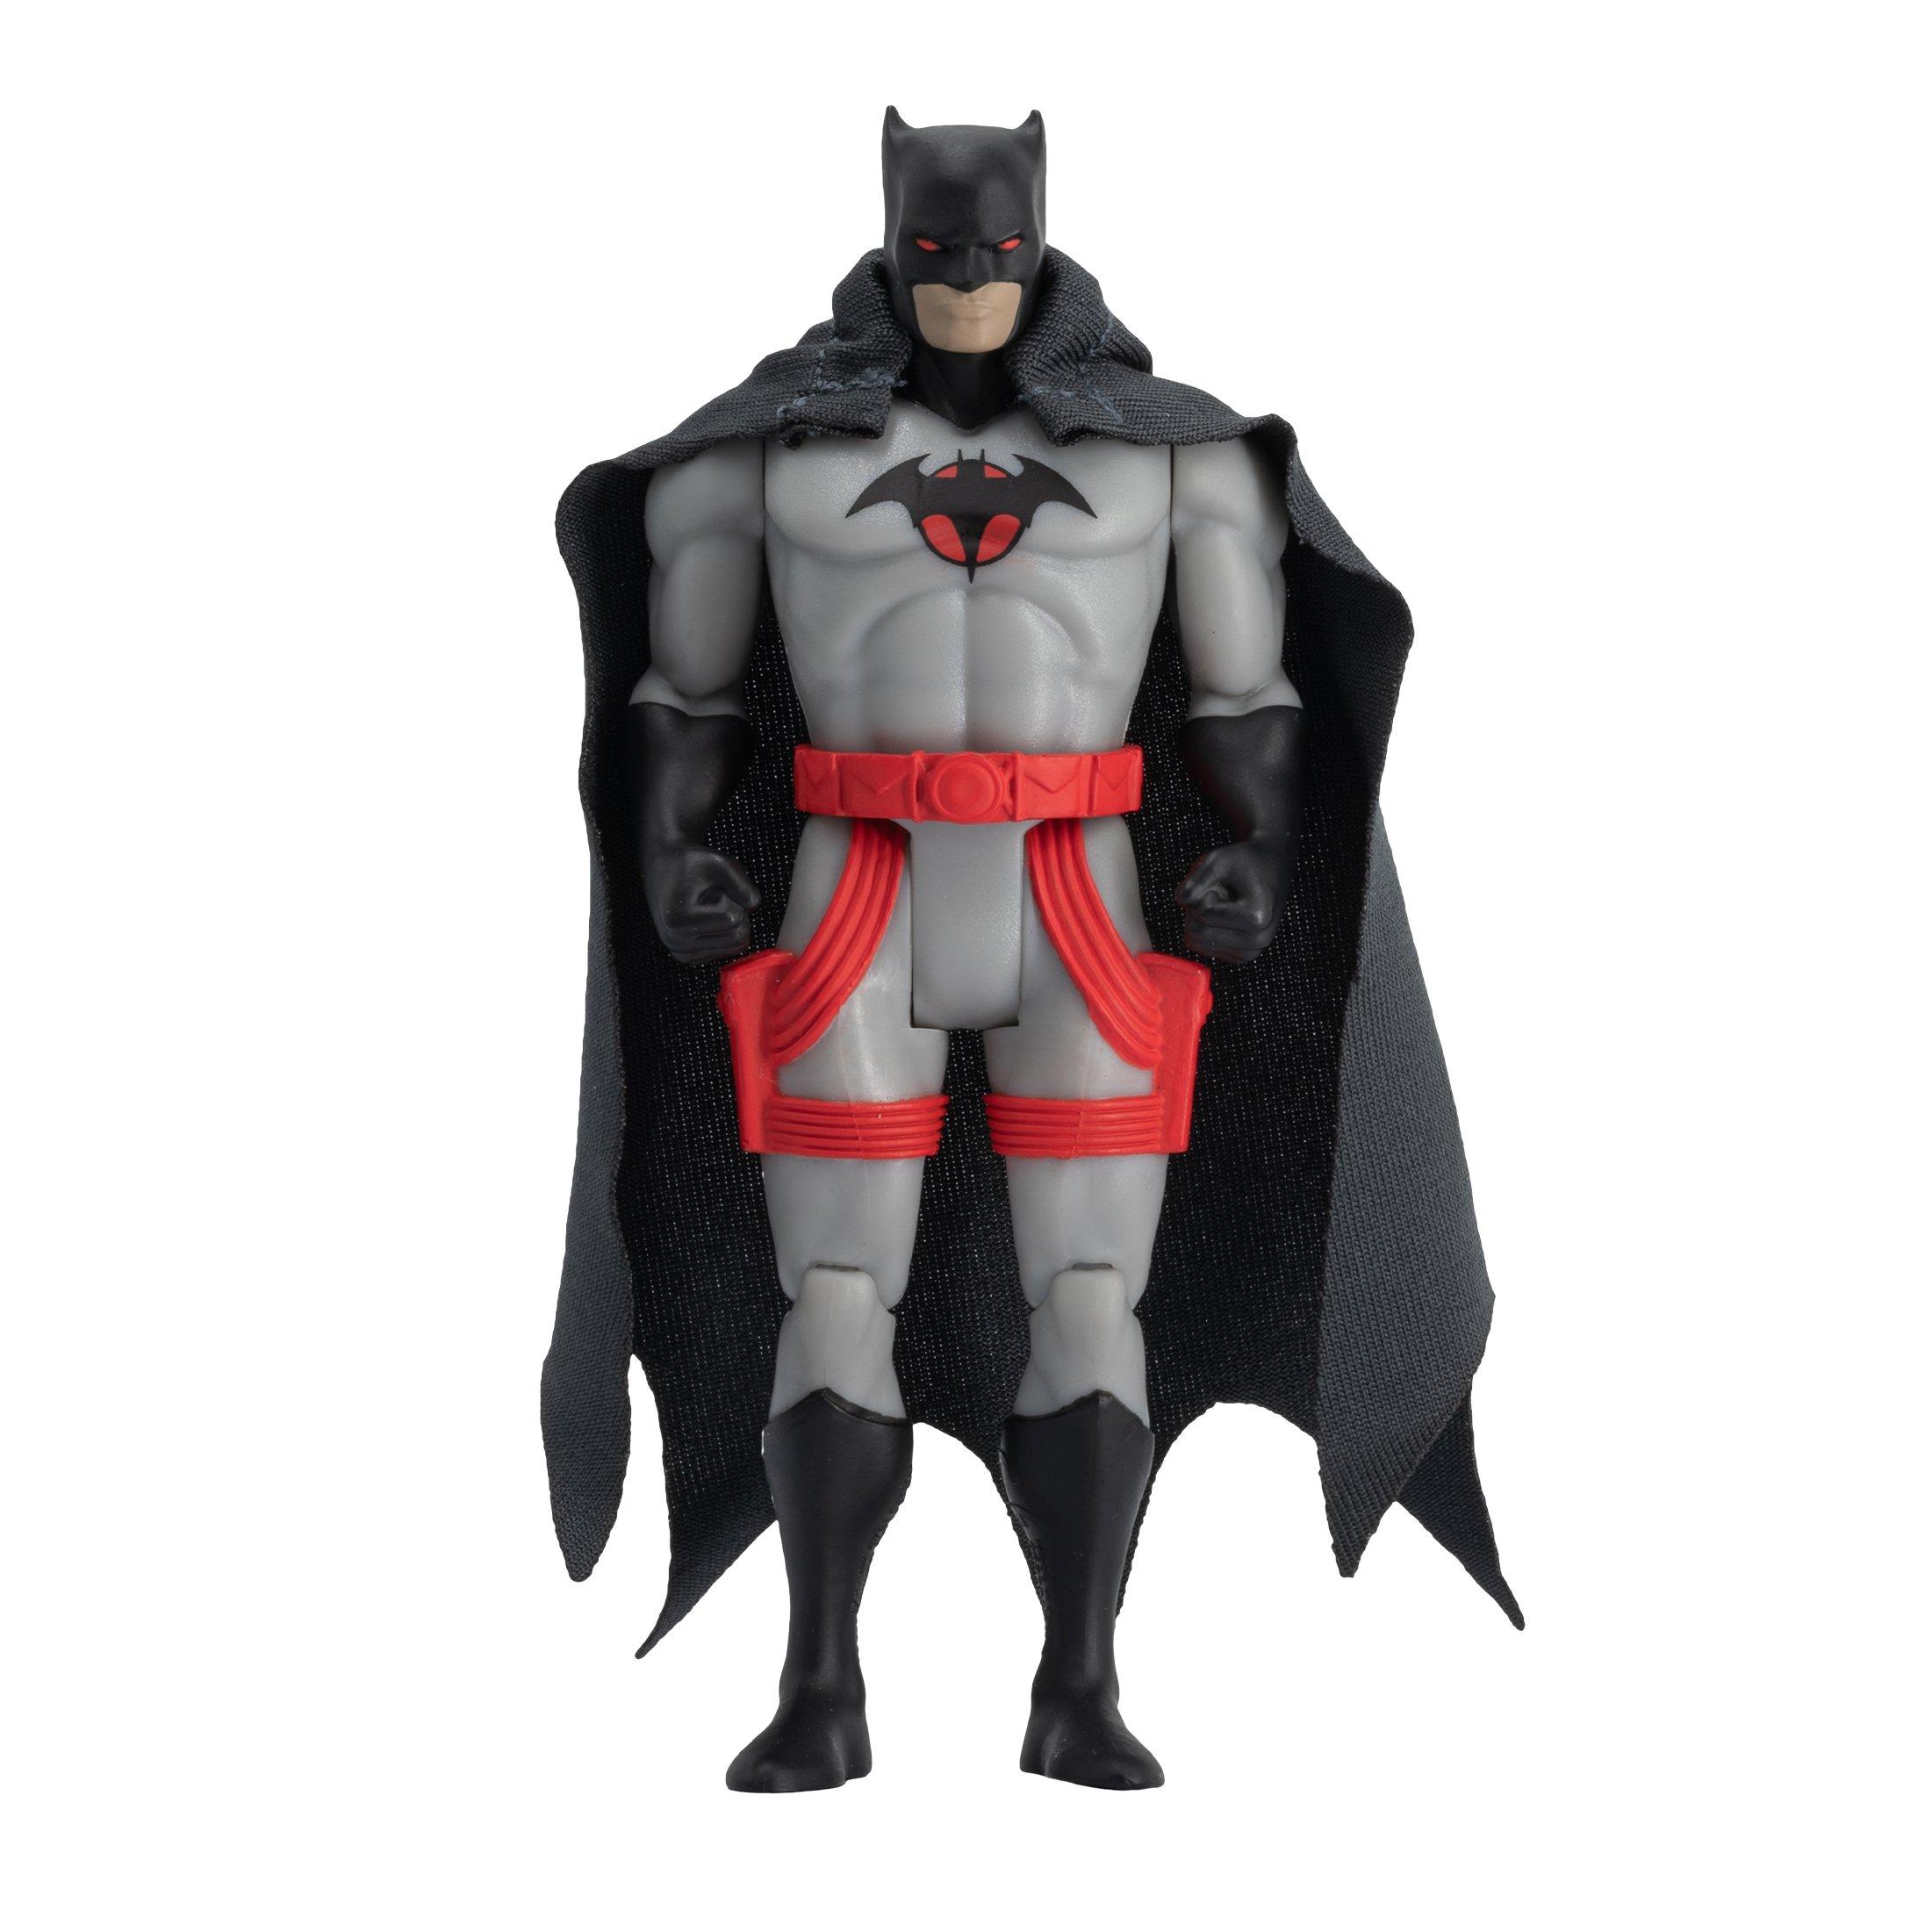 Batman (DC Super Powers) 4 Figure